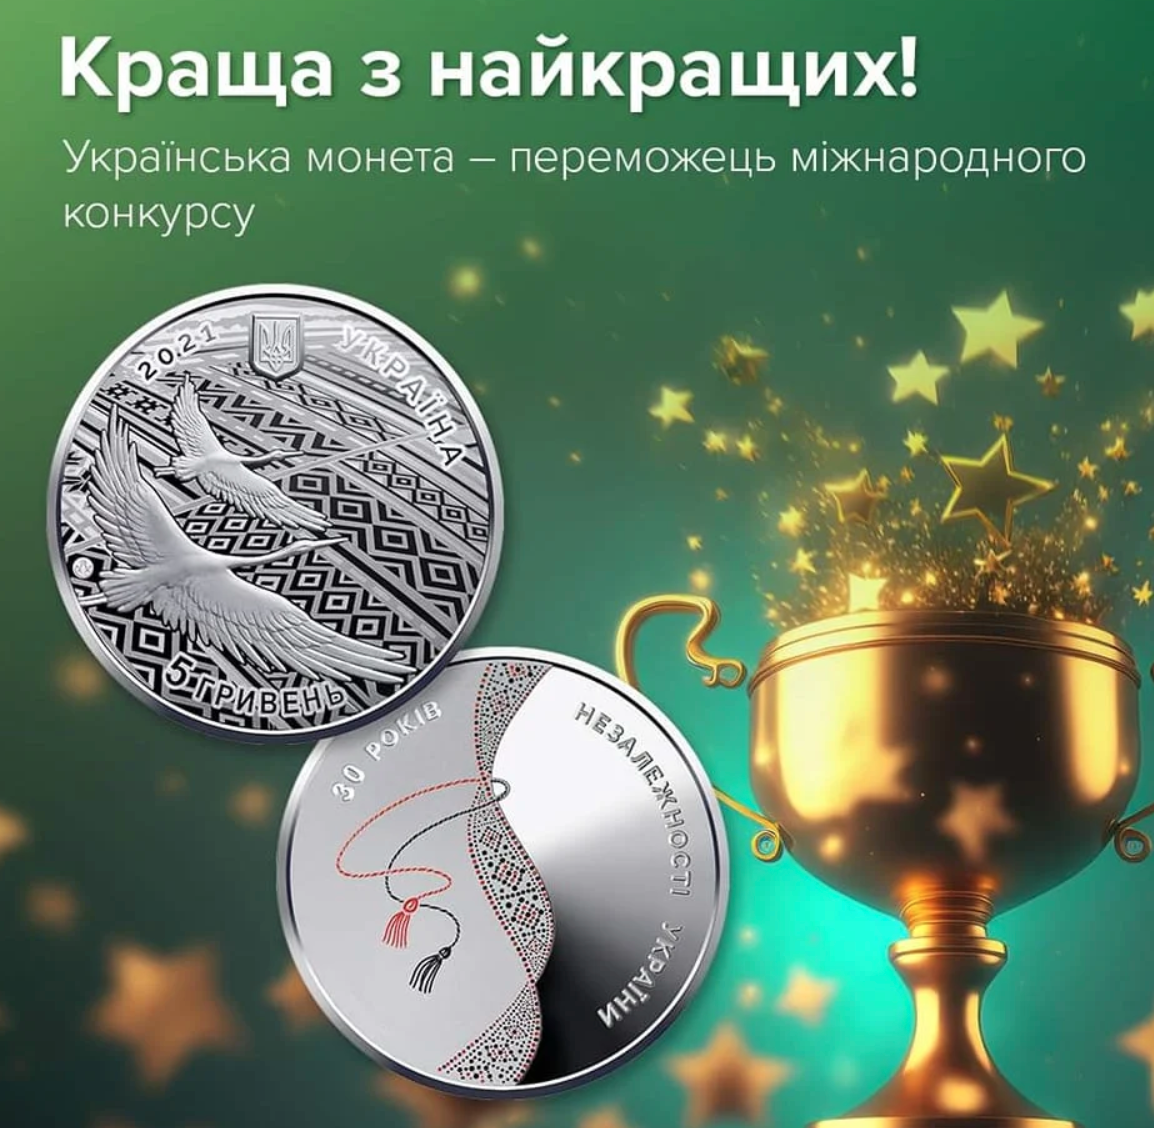 Украинская монета к 30-летию Независимости победила в международном конкурсе "Монета года"